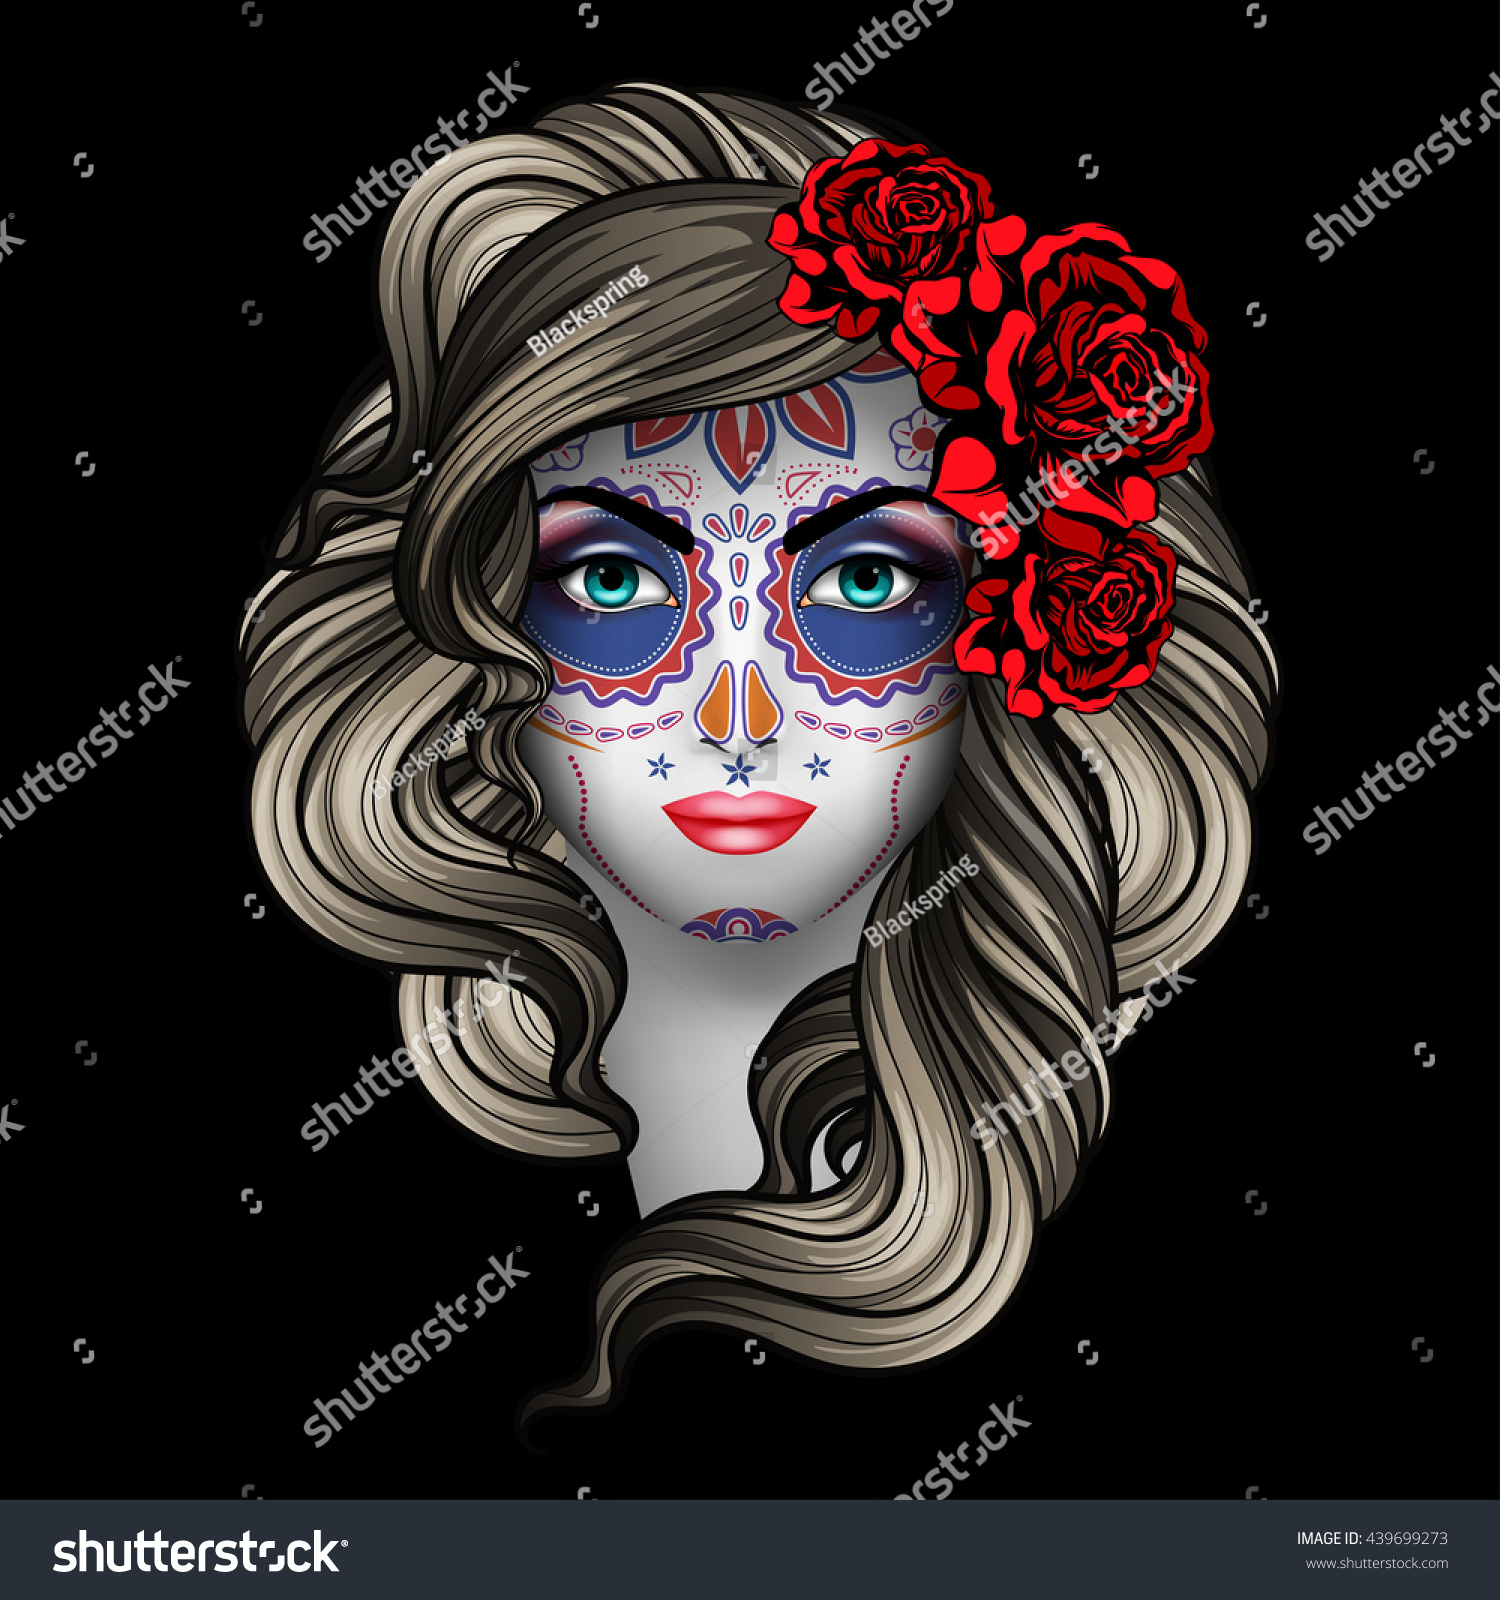 Woman With Calavera Makeup. Day Of The Dead (Dia De Los Muertos ...